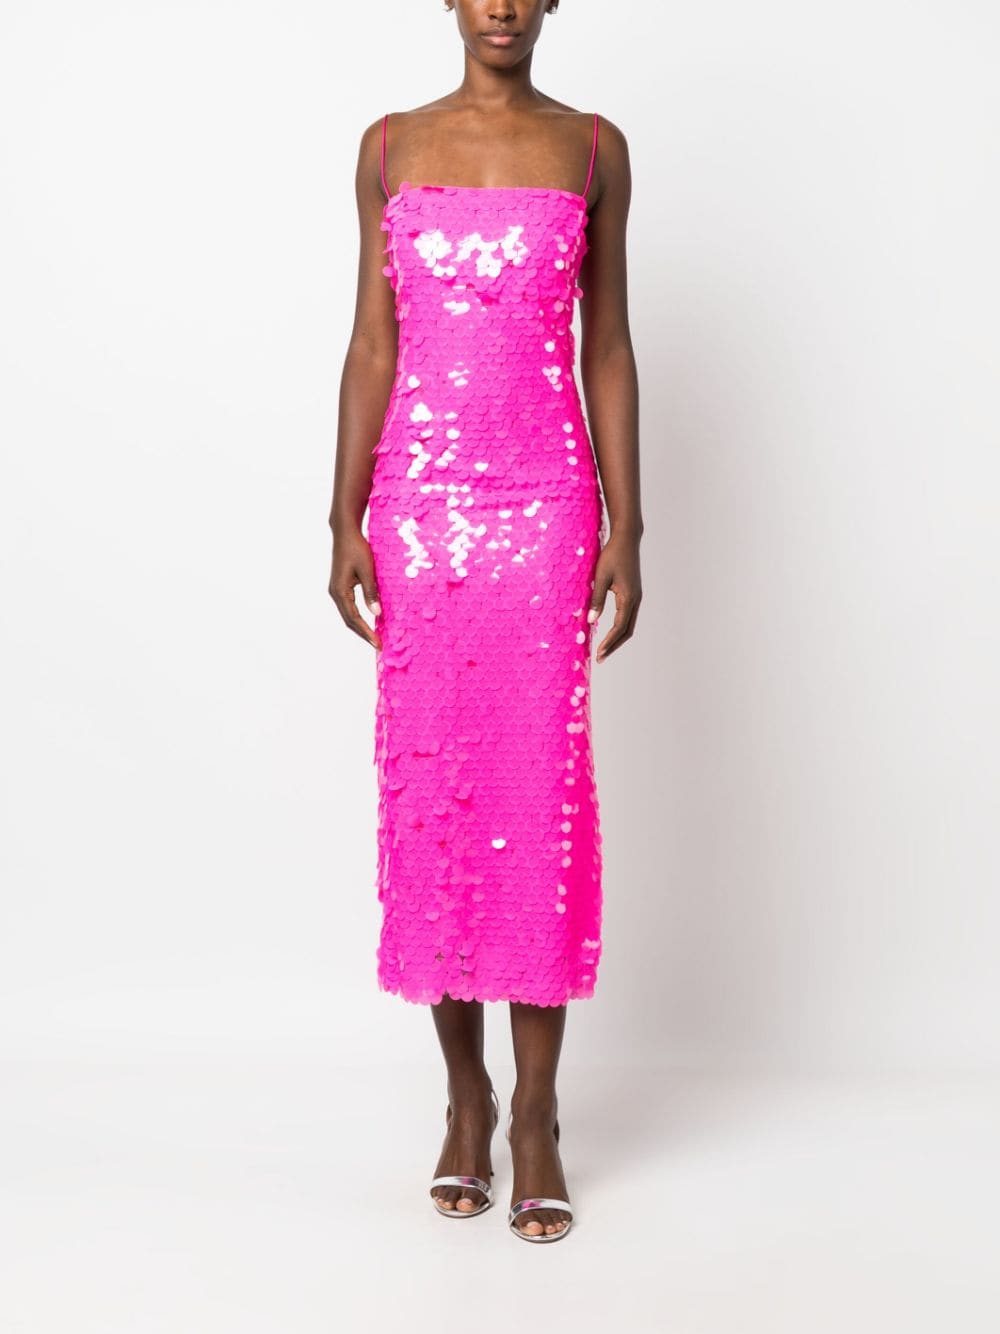 The New Arrivals Ilkyaz Ozel Midi-jurk met pailletten - Roze